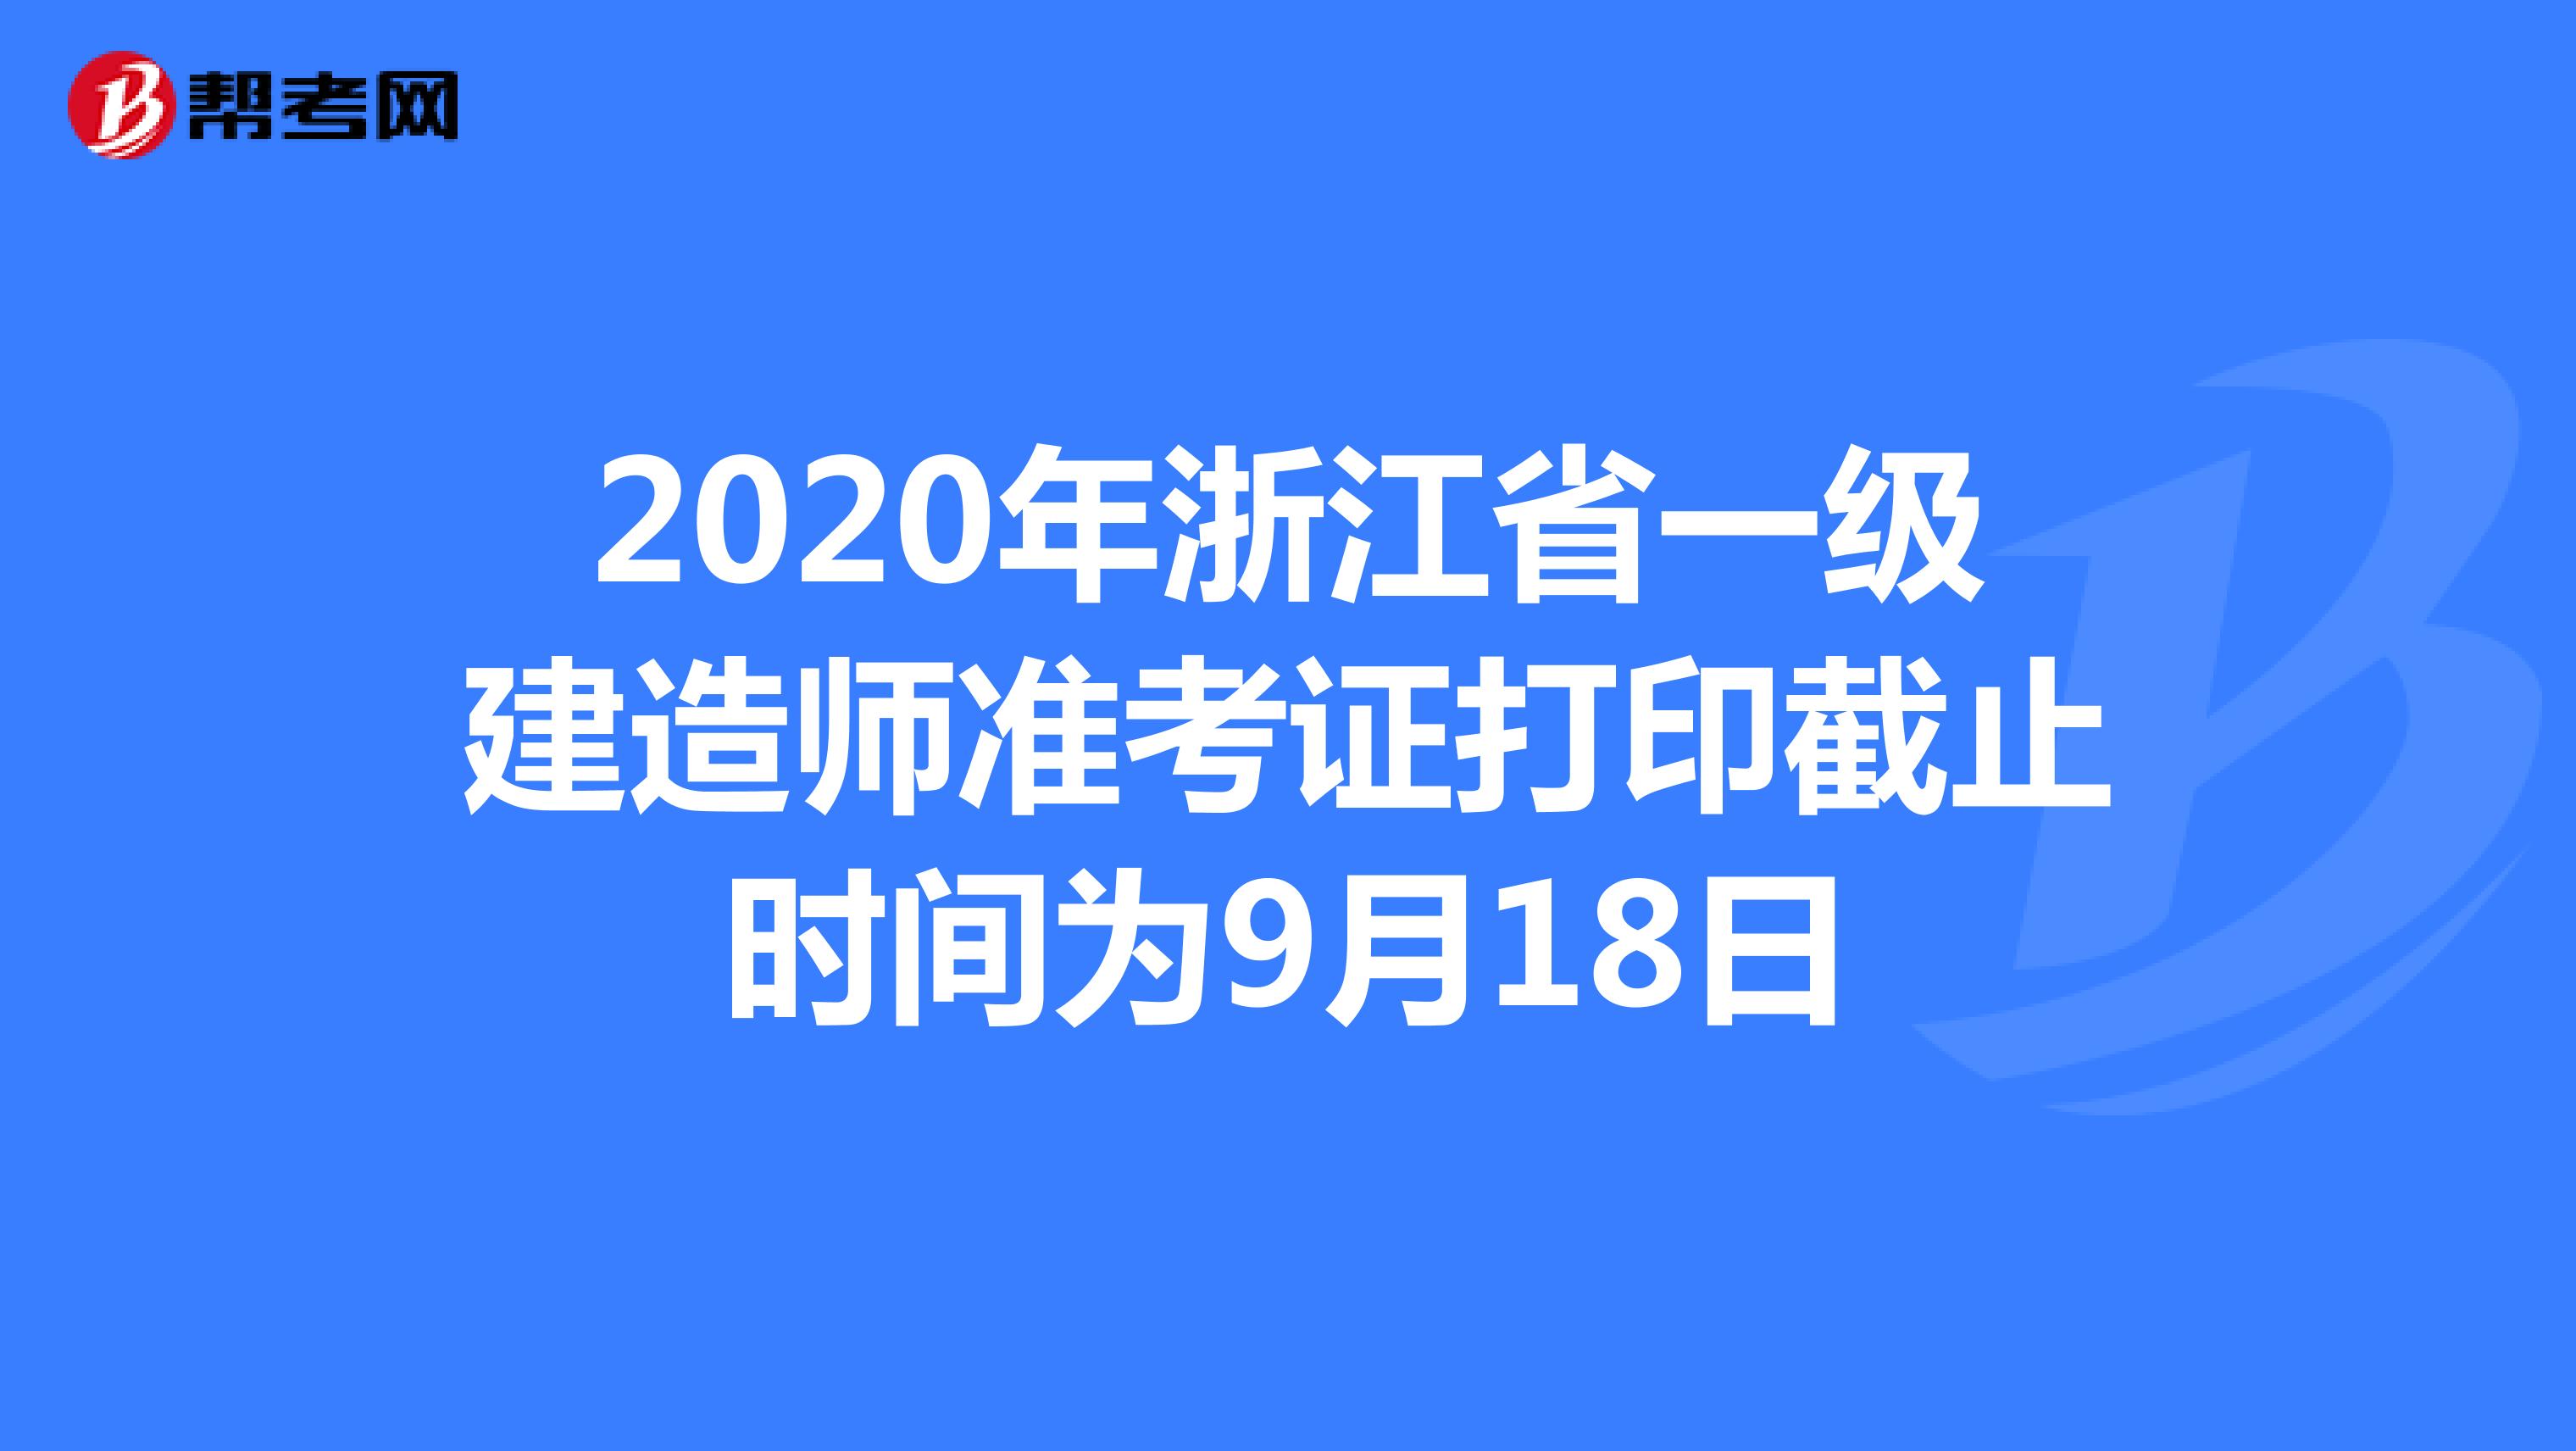 2020年浙江省一级建造师准考证打印截止时间为9月18日